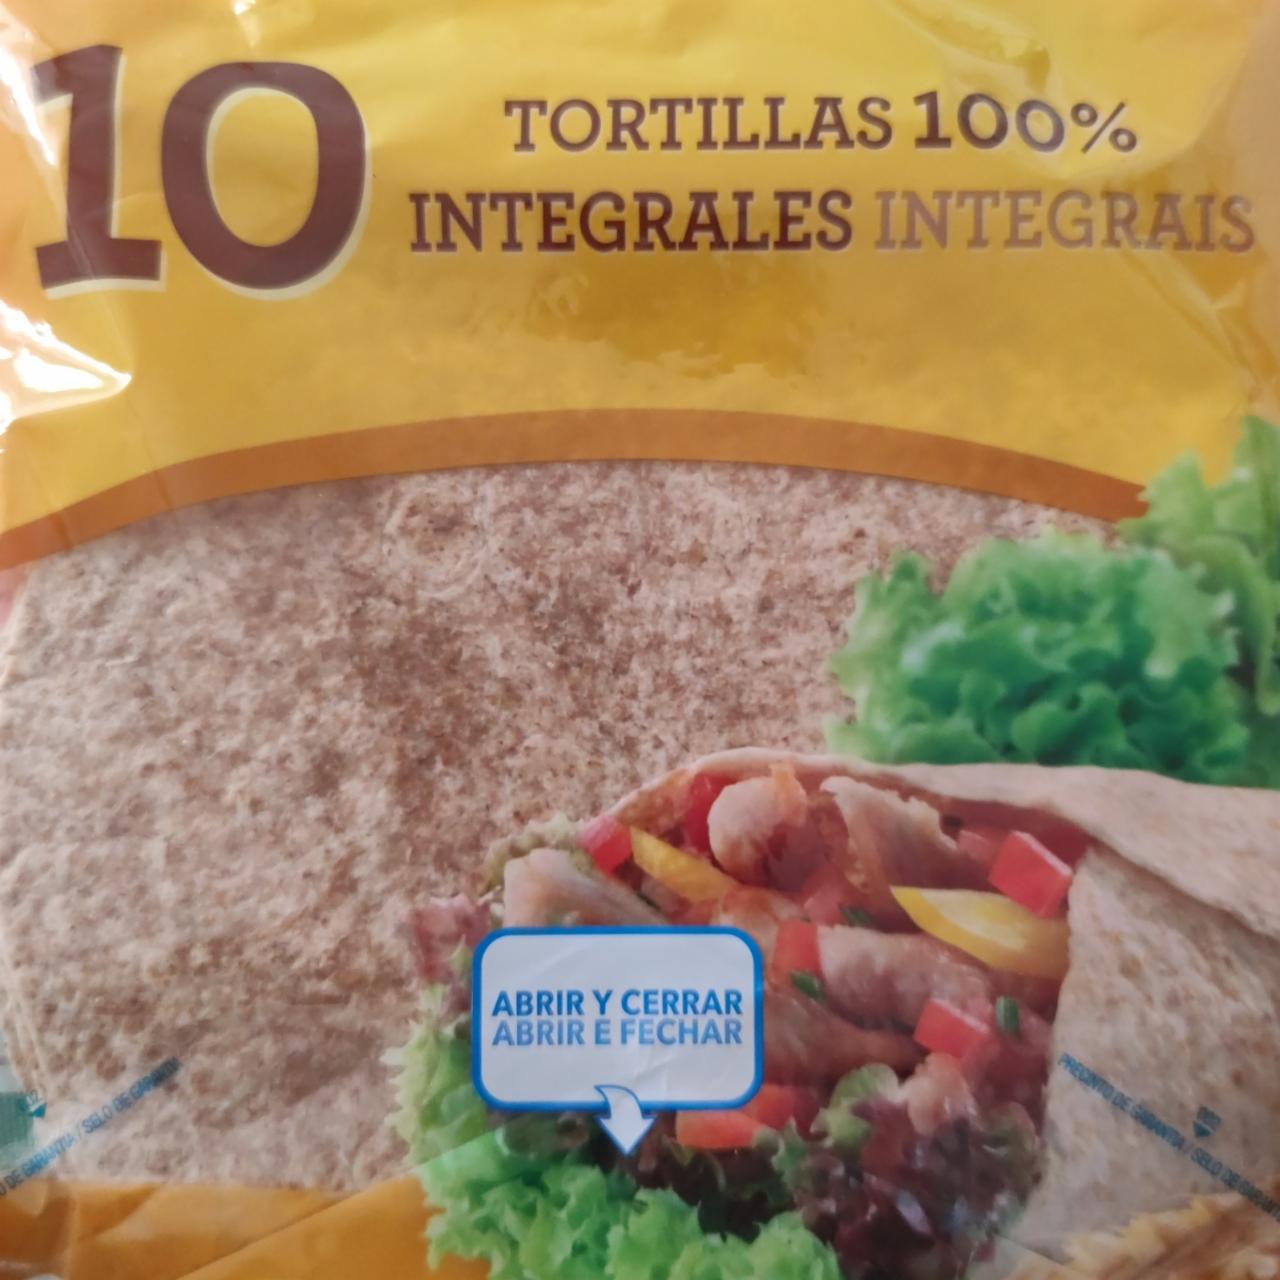 Фото - Тортилья цільнозернова Tortillas 100% Integrales Hacendado